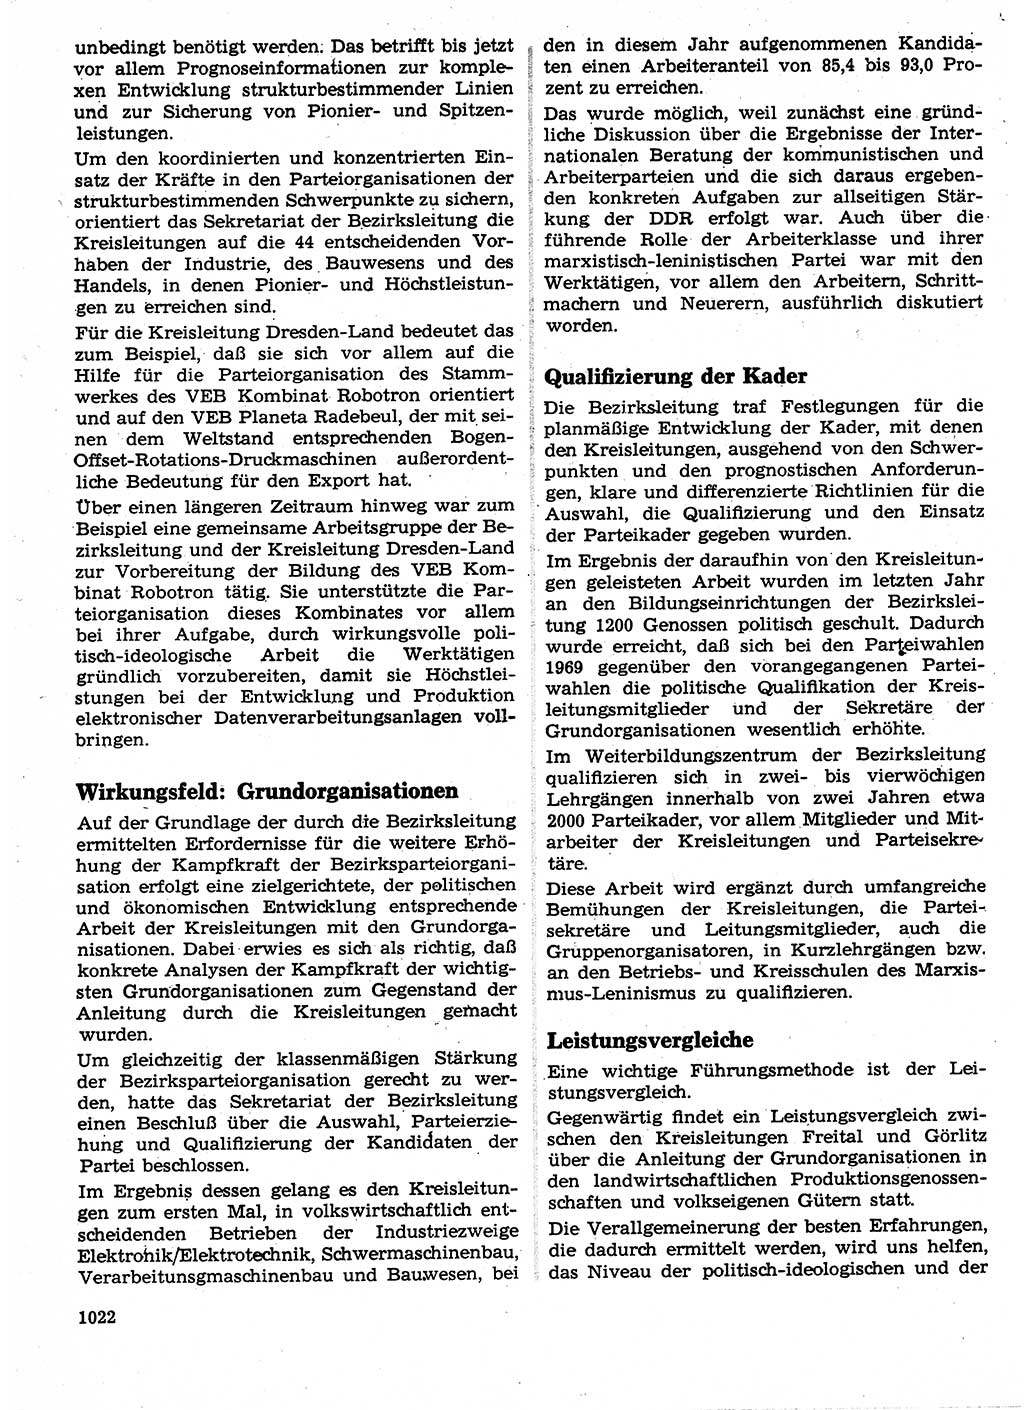 Neuer Weg (NW), Organ des Zentralkomitees (ZK) der SED (Sozialistische Einheitspartei Deutschlands) für Fragen des Parteilebens, 24. Jahrgang [Deutsche Demokratische Republik (DDR)] 1969, Seite 1022 (NW ZK SED DDR 1969, S. 1022)